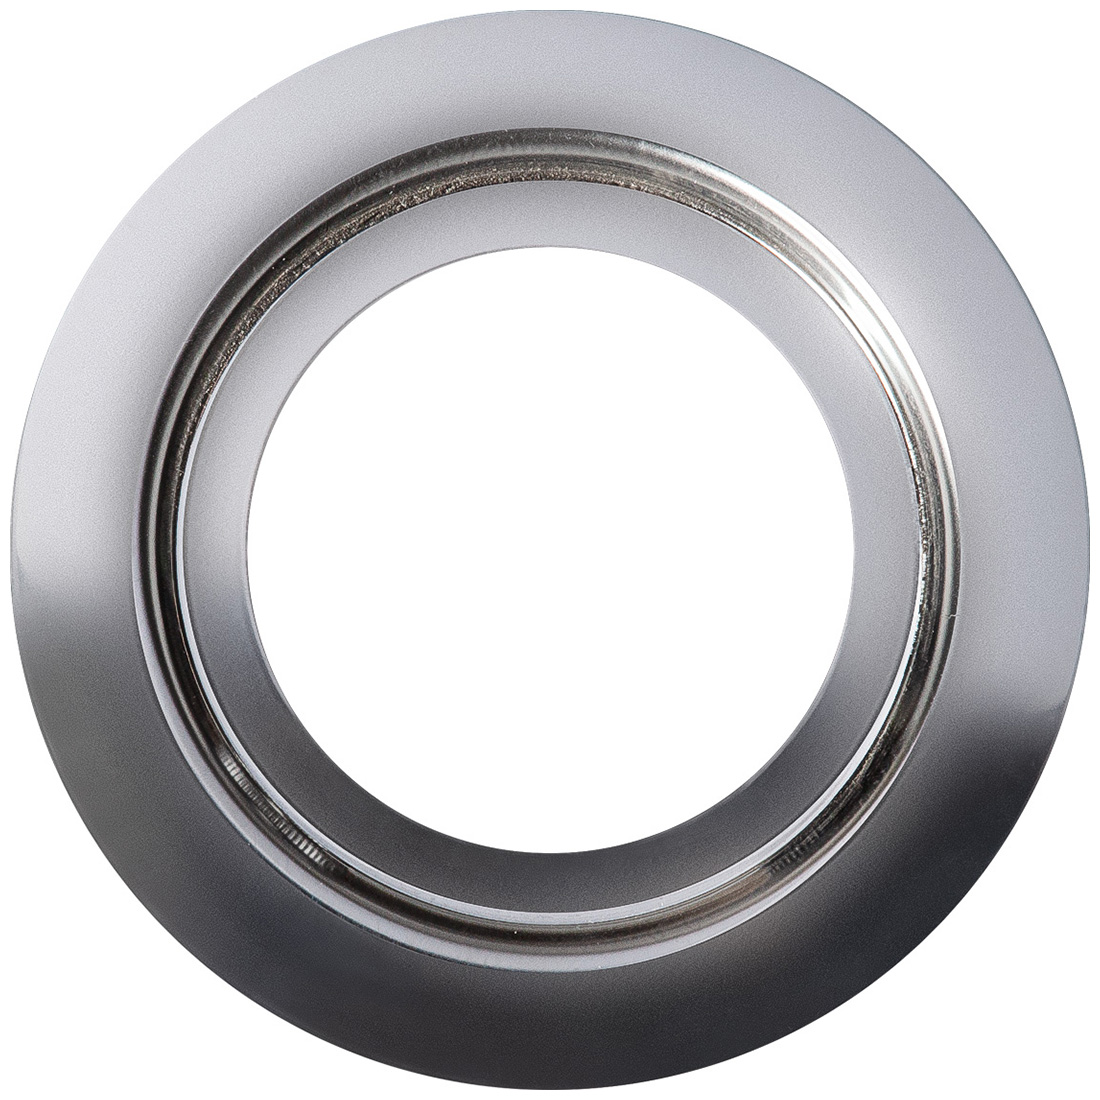 Кольцо переходник для измельчителя Bort Ring 140, 93412635 кольцо переходник для измельчителя bort ring 160 для кухонных моек 160 мм